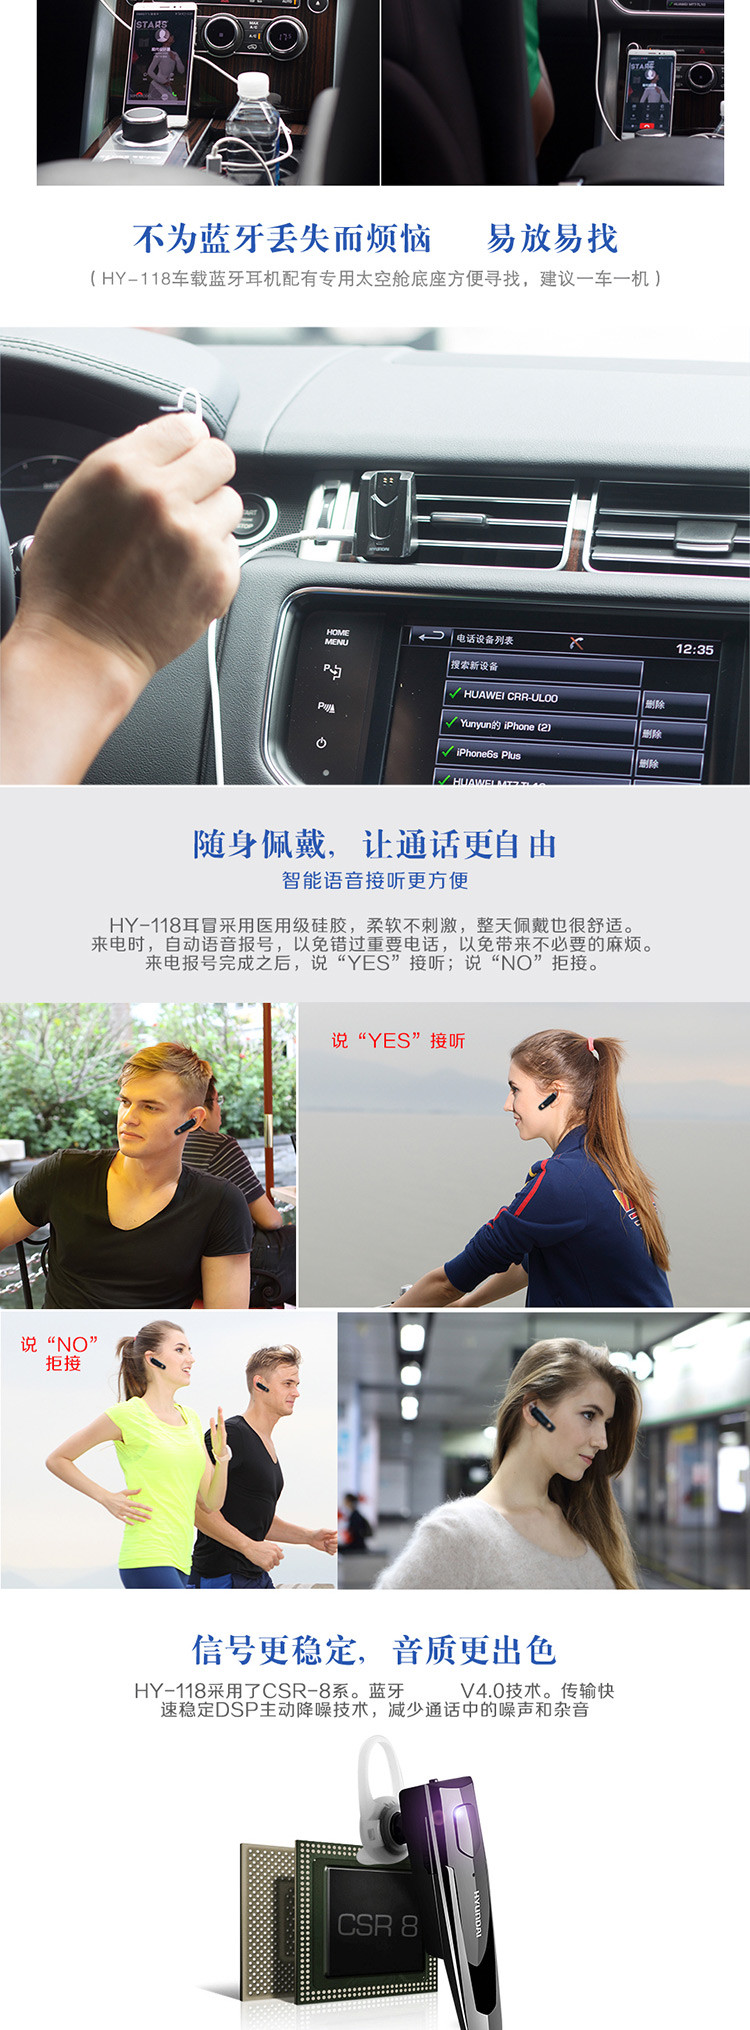 韩国现代/HYUNDAI 智能车载蓝牙耳机 HY-118